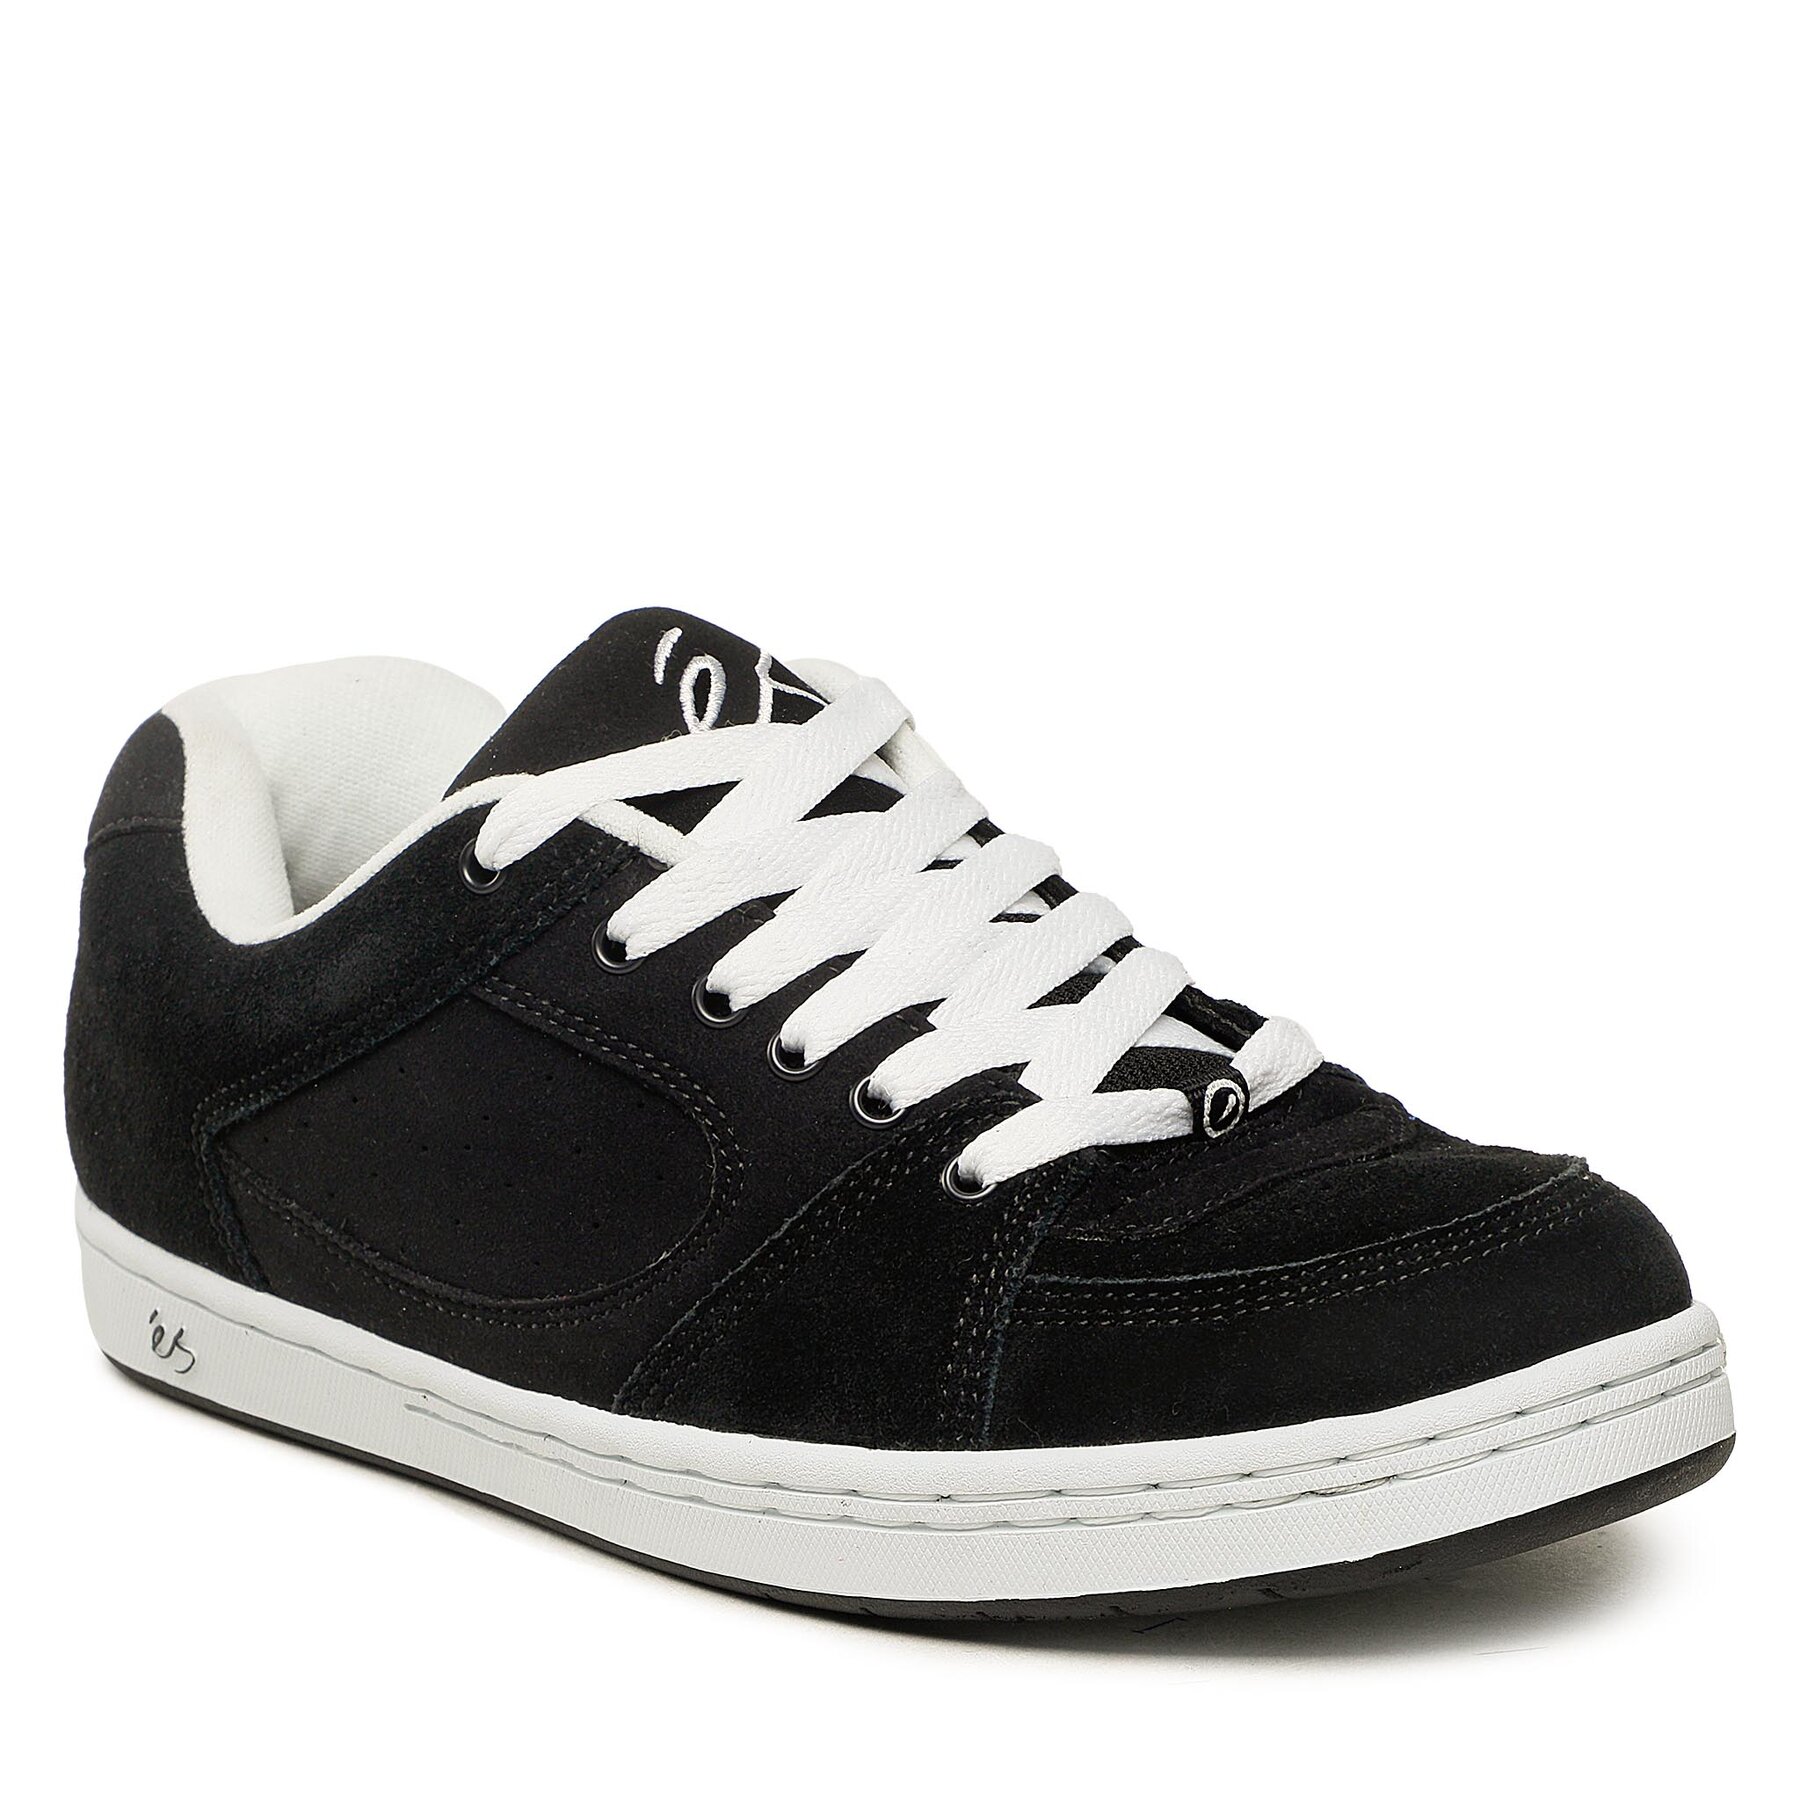 Sneakers Es Accel Og 5101000139 Black/White/Black 992 5101000139 imagine noua